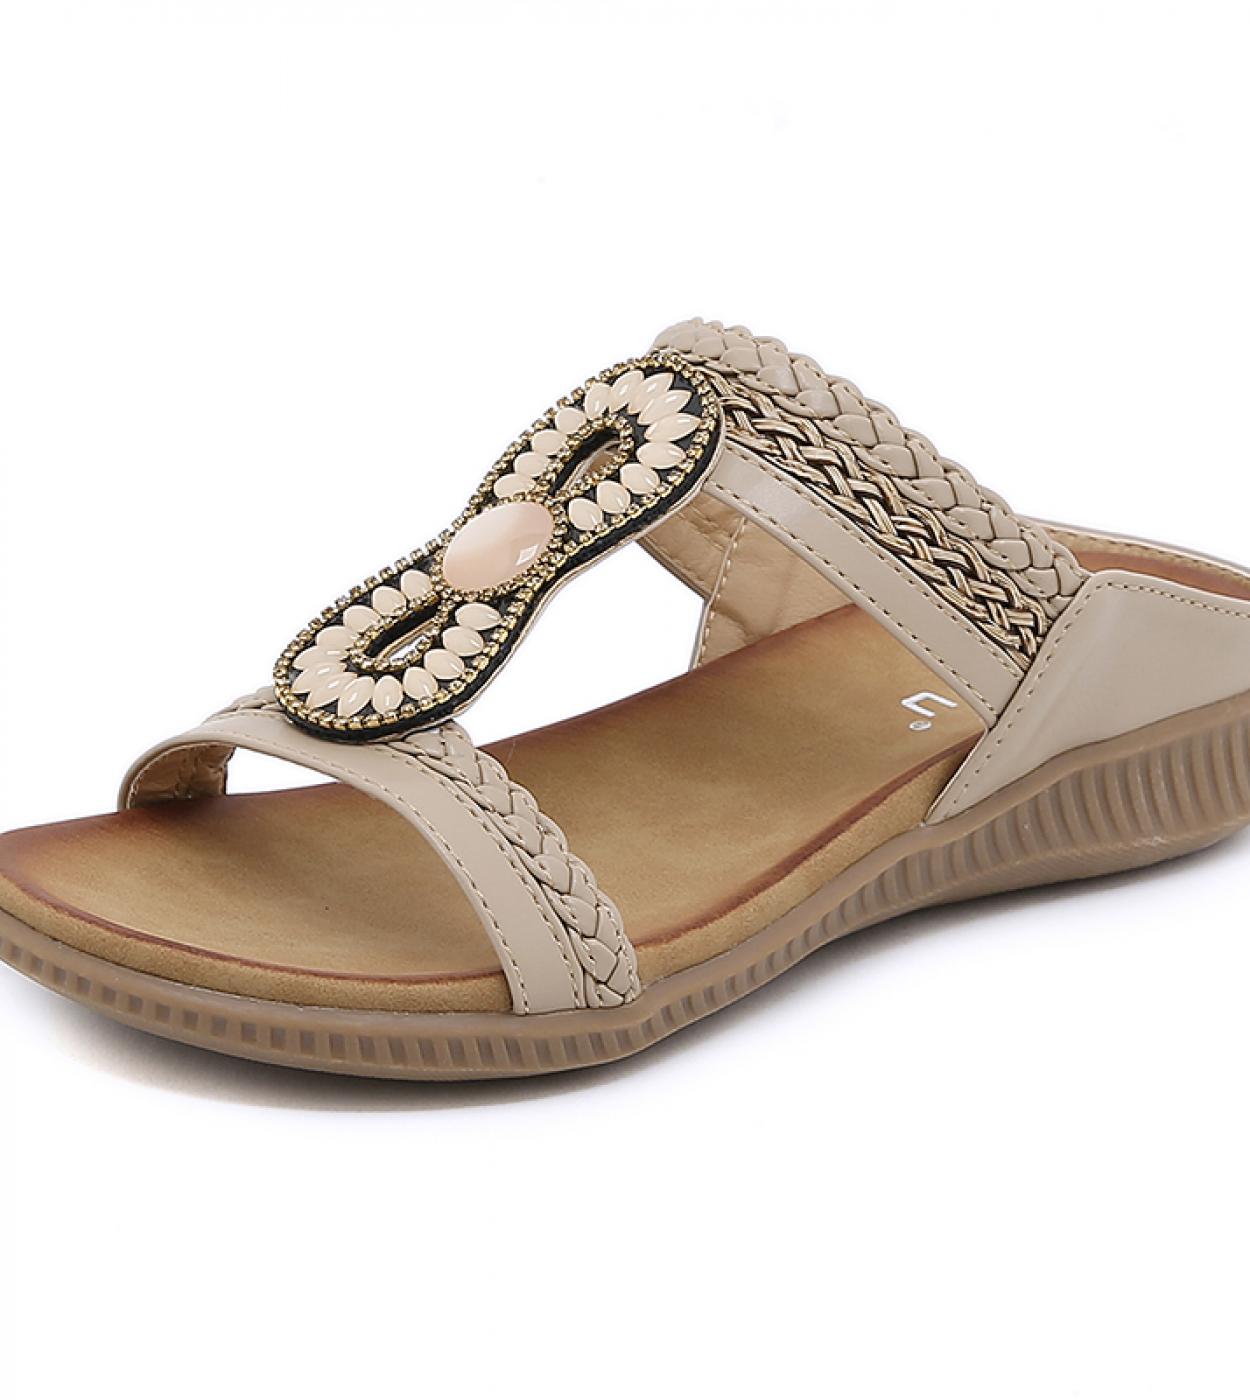 2023 New In Womens Sandals Elegant Low Heel Outside Modern Slippers For Women Flat Heel Casual Beach Shoes Flip Flops B